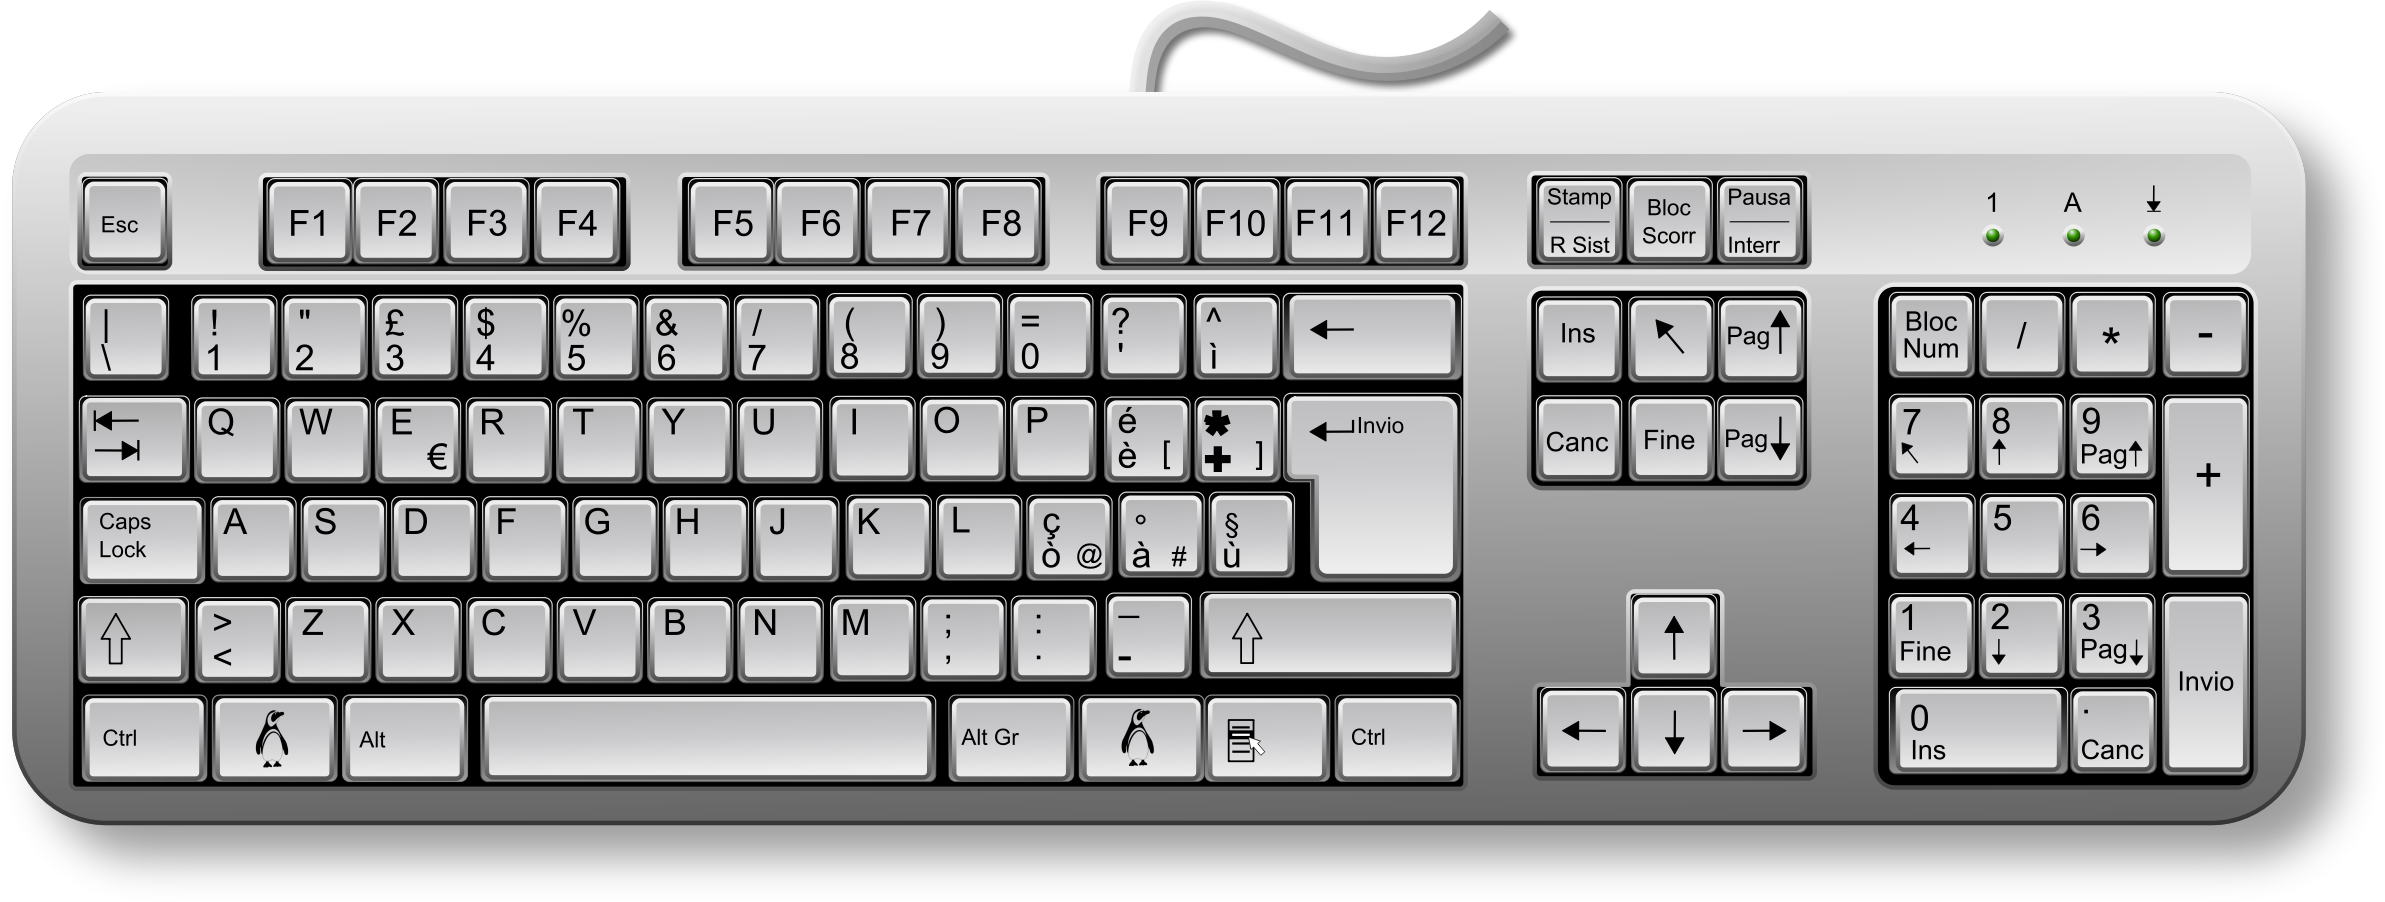 mac keyboard clipart - photo #27